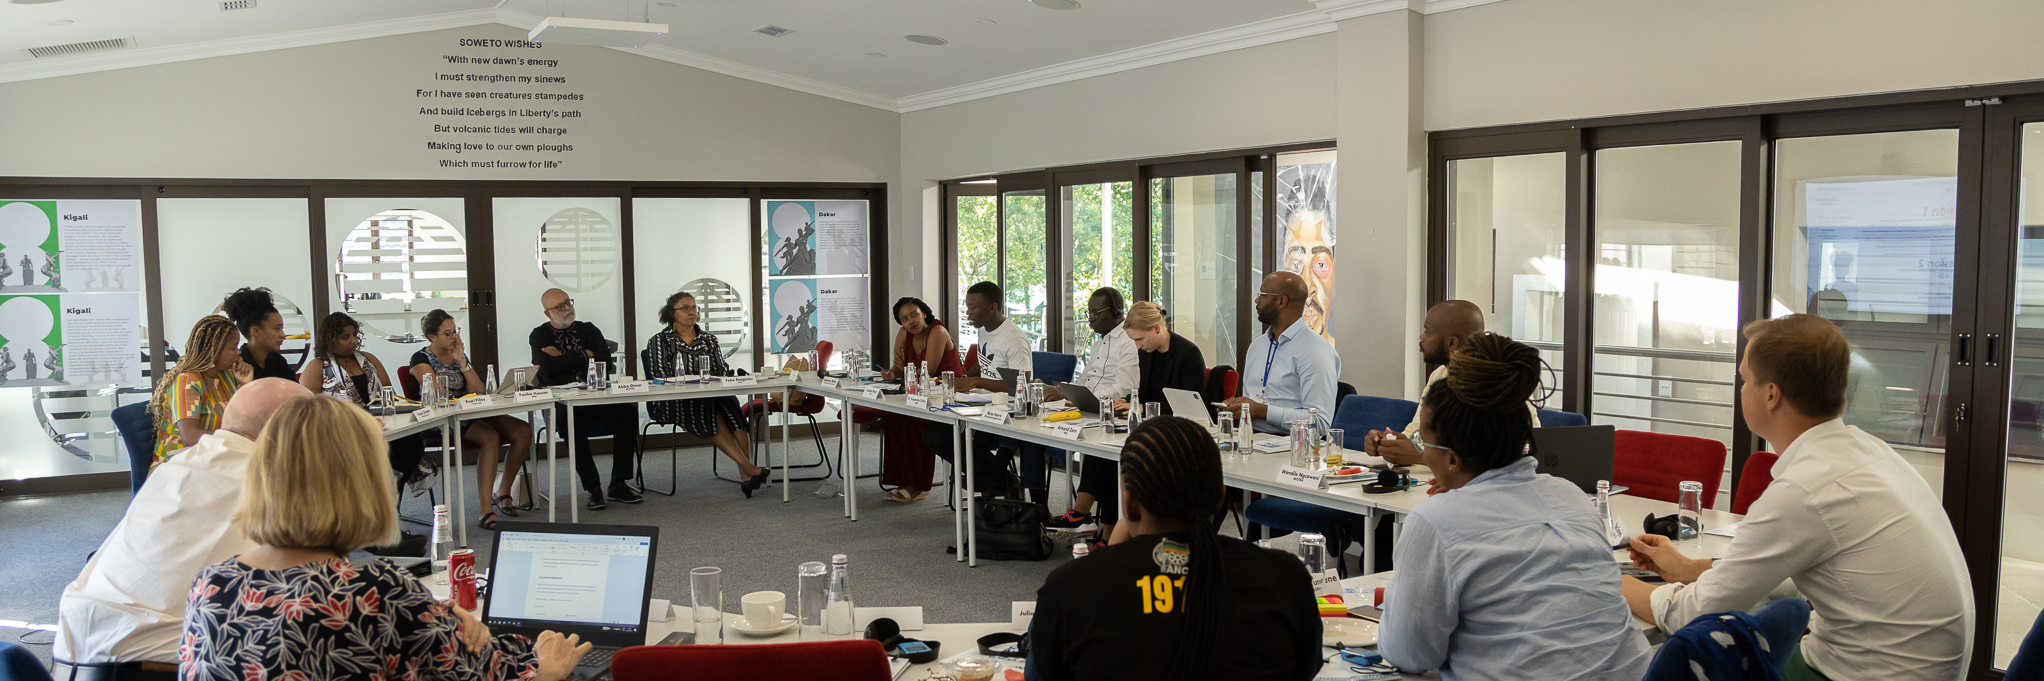 Teilnehmende an Tischrunde beim Workshop im Lindiwe Mabuza Space von FES Südafrika 